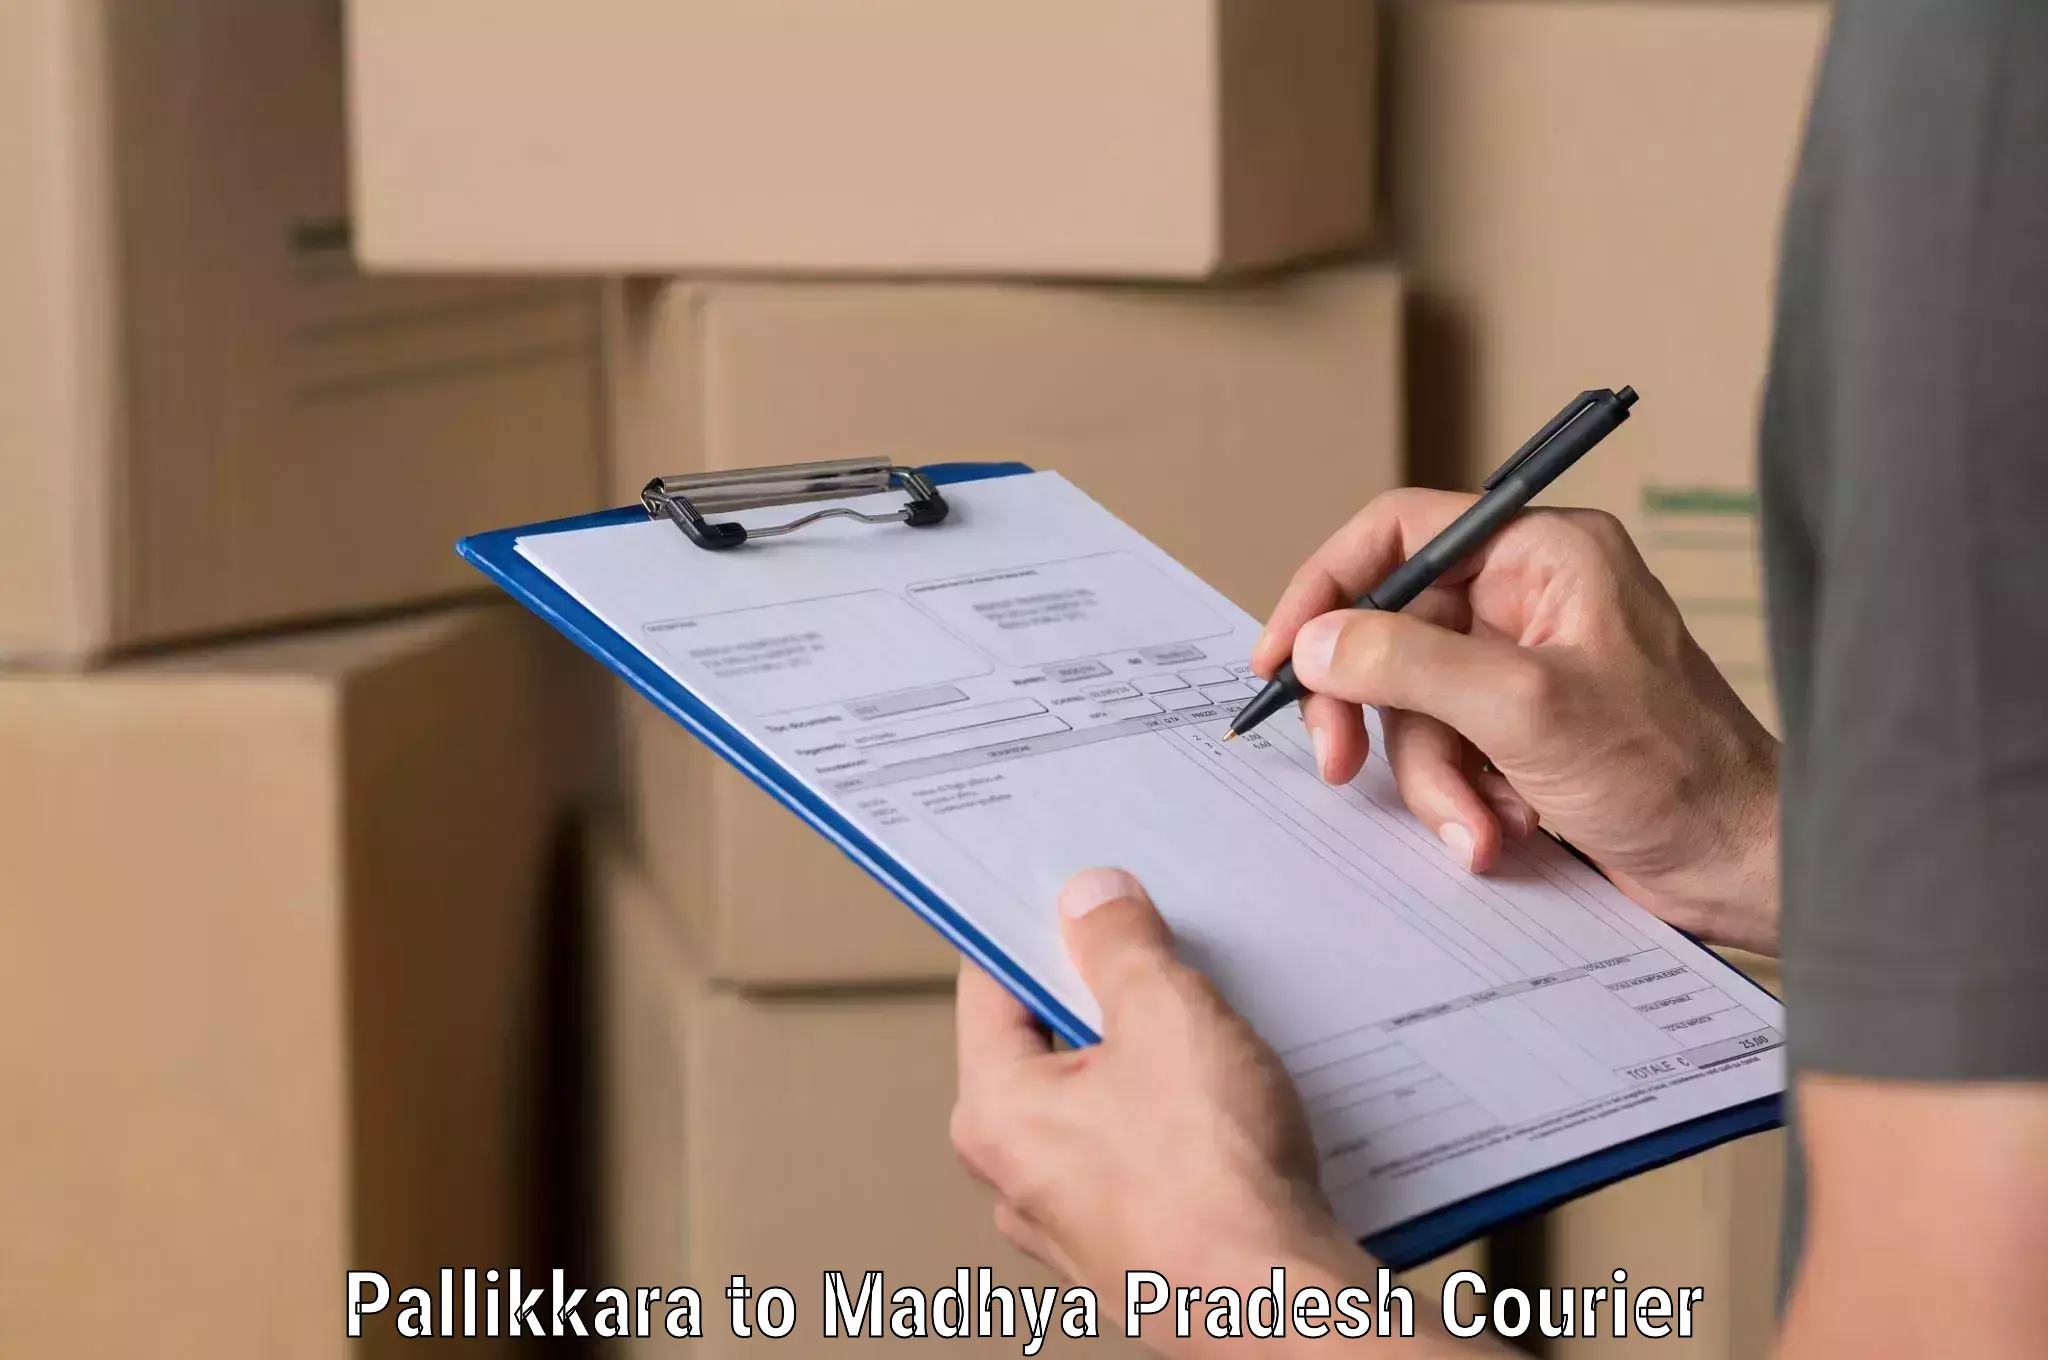 Supply chain efficiency Pallikkara to Rahatgarh